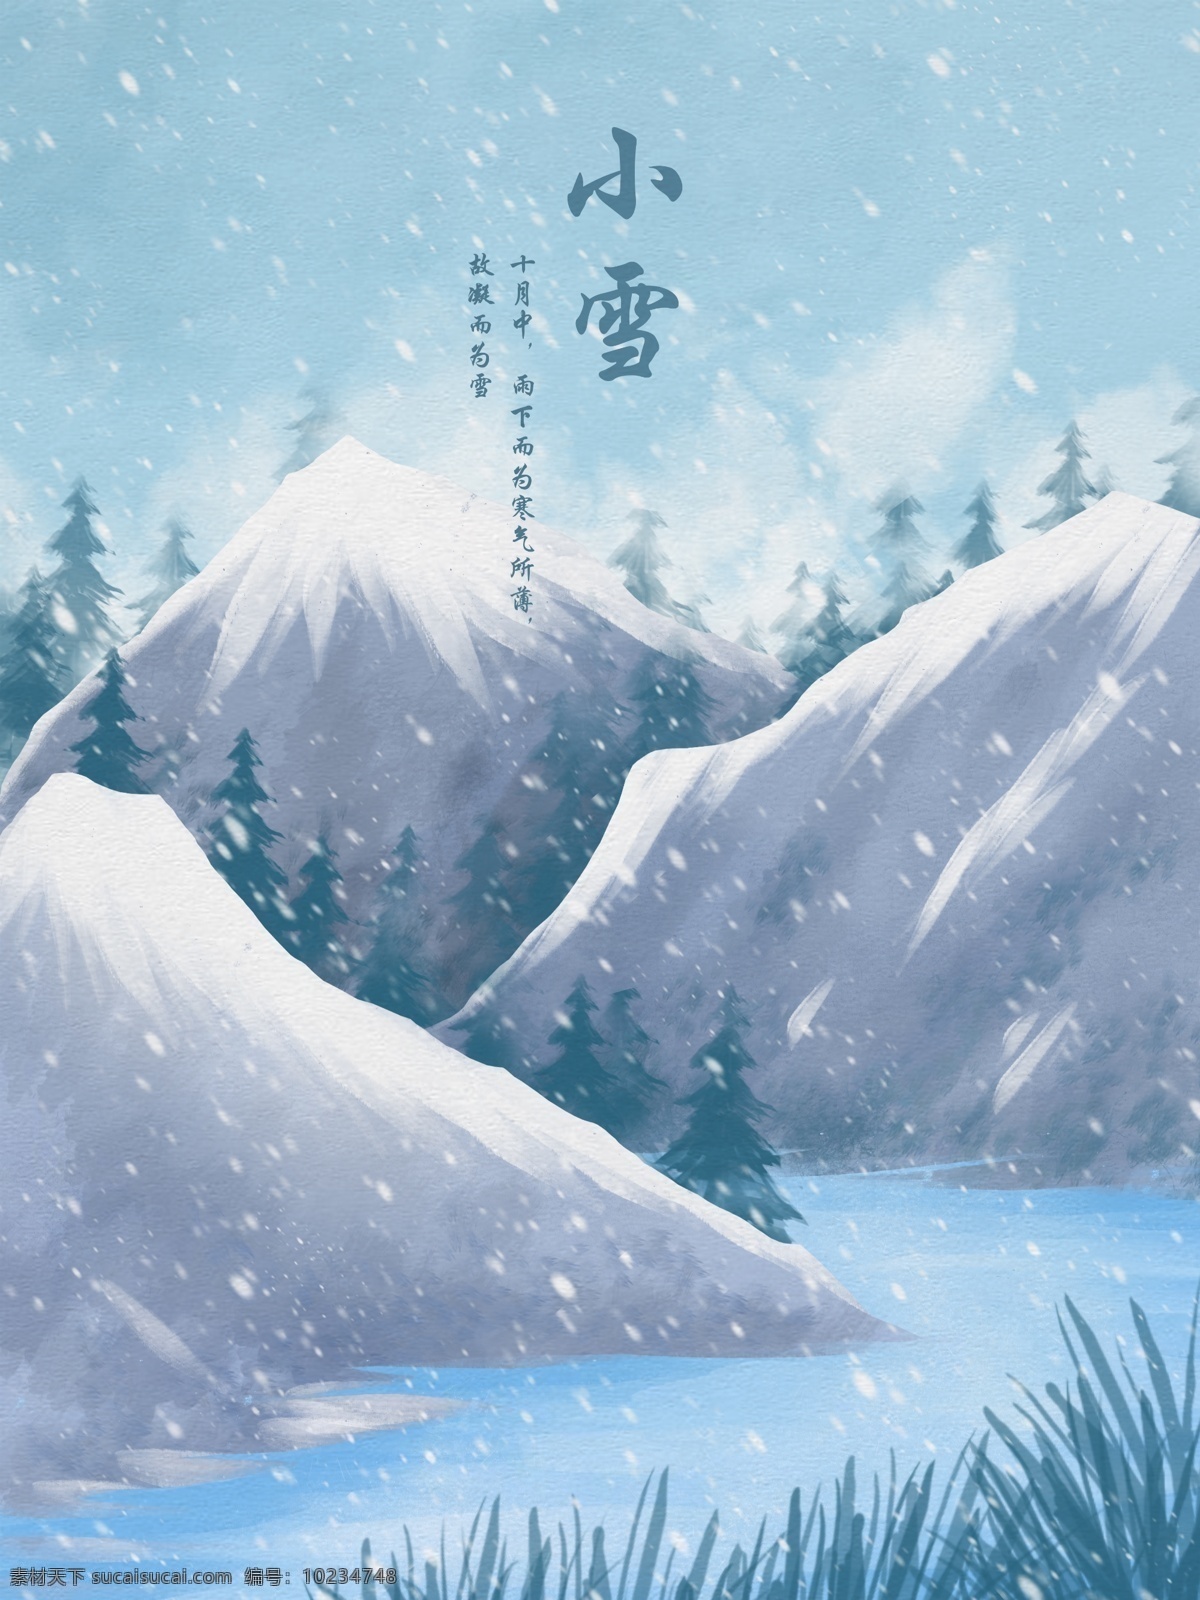 小雪 水彩 插画 雪 中 山间 松林 冬天 蓝色 清新 风景 壁纸 雪景 山 积雪 松树 河水 冷色 背景